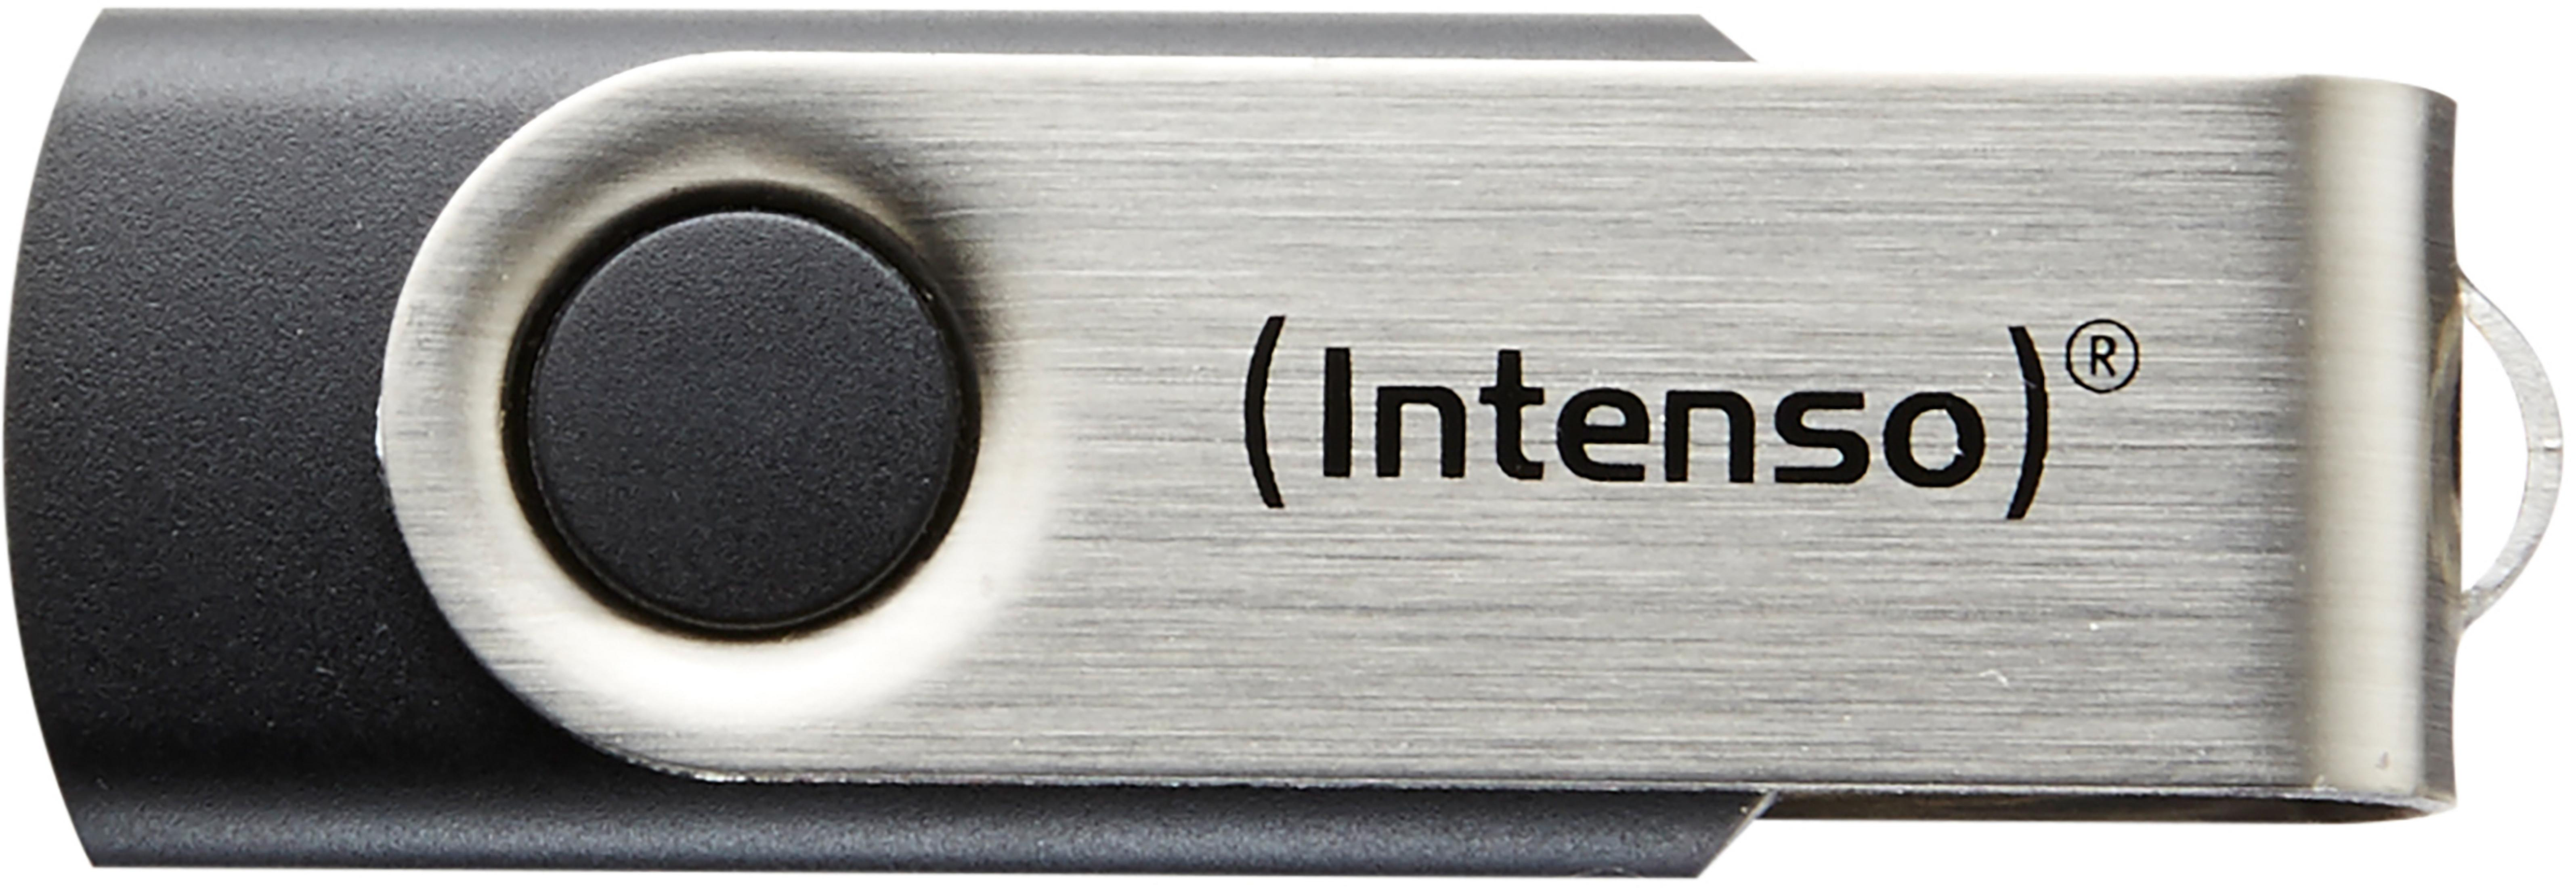 16 INTENSO GB) Line (schwarz-silber, Basic USB-Stick 16GB